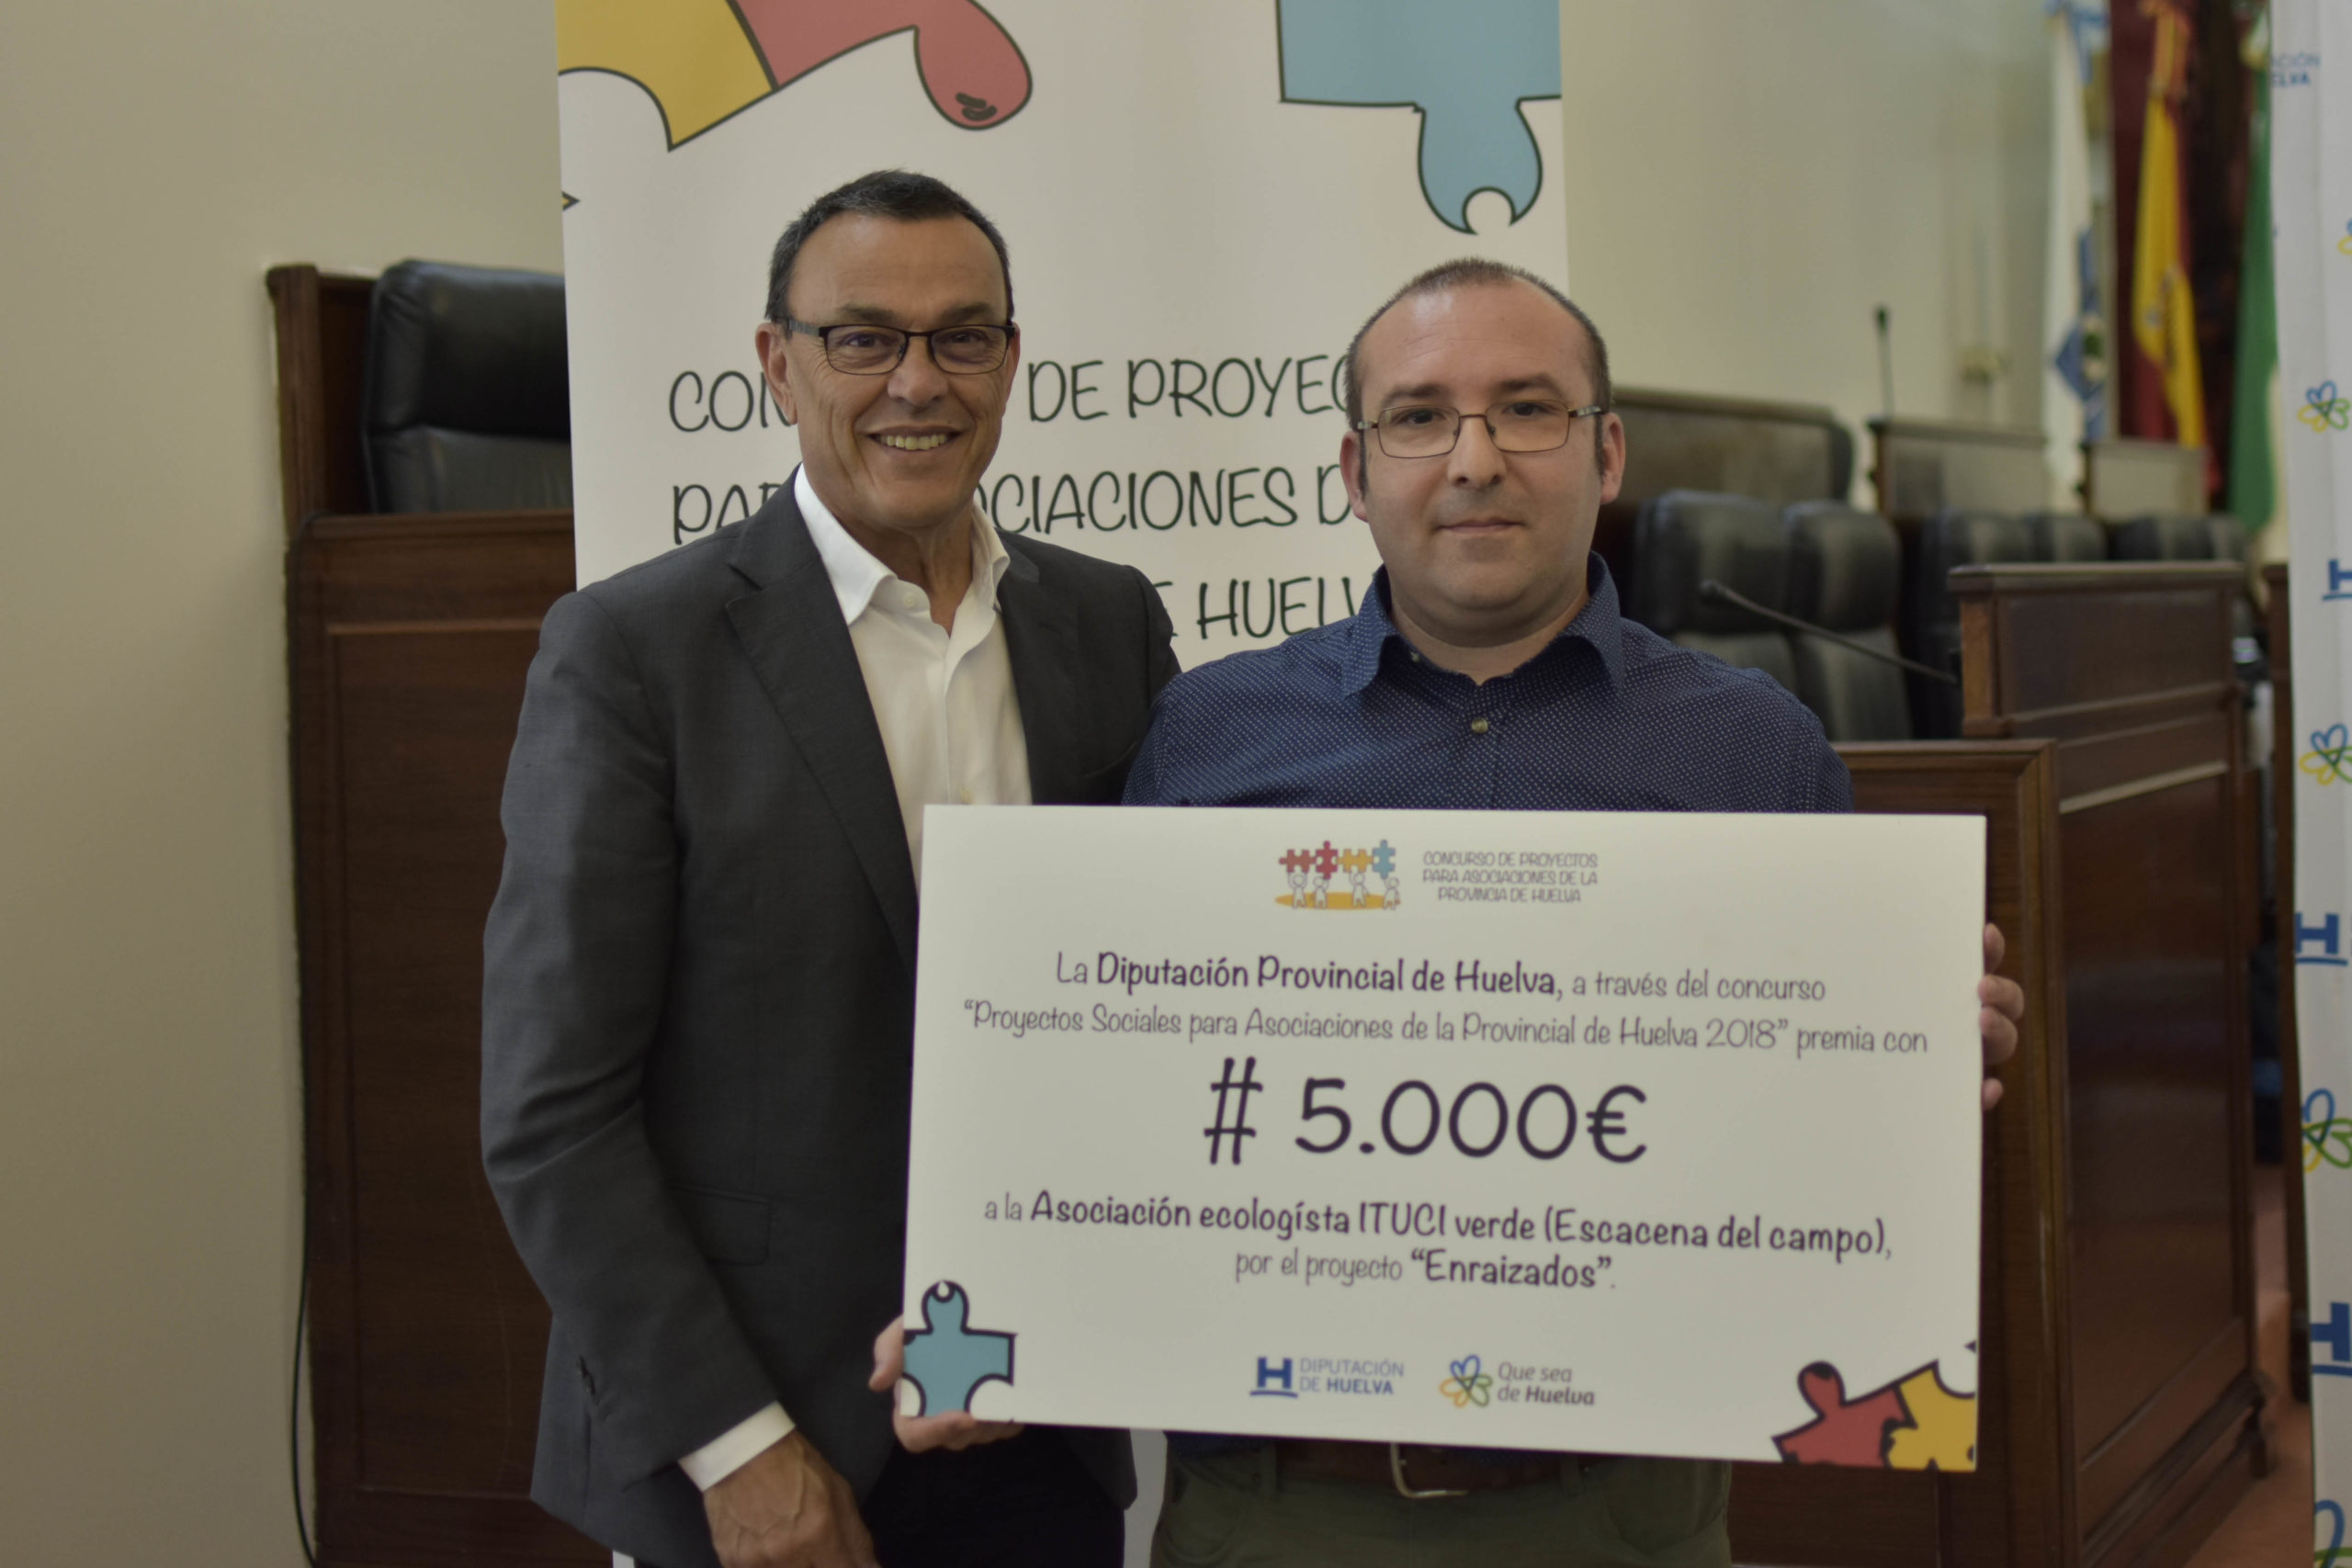 Diputación entregará a finales de año los premios del Concurso de Proyectos Sociales para Asociaciones, basado en los ODS